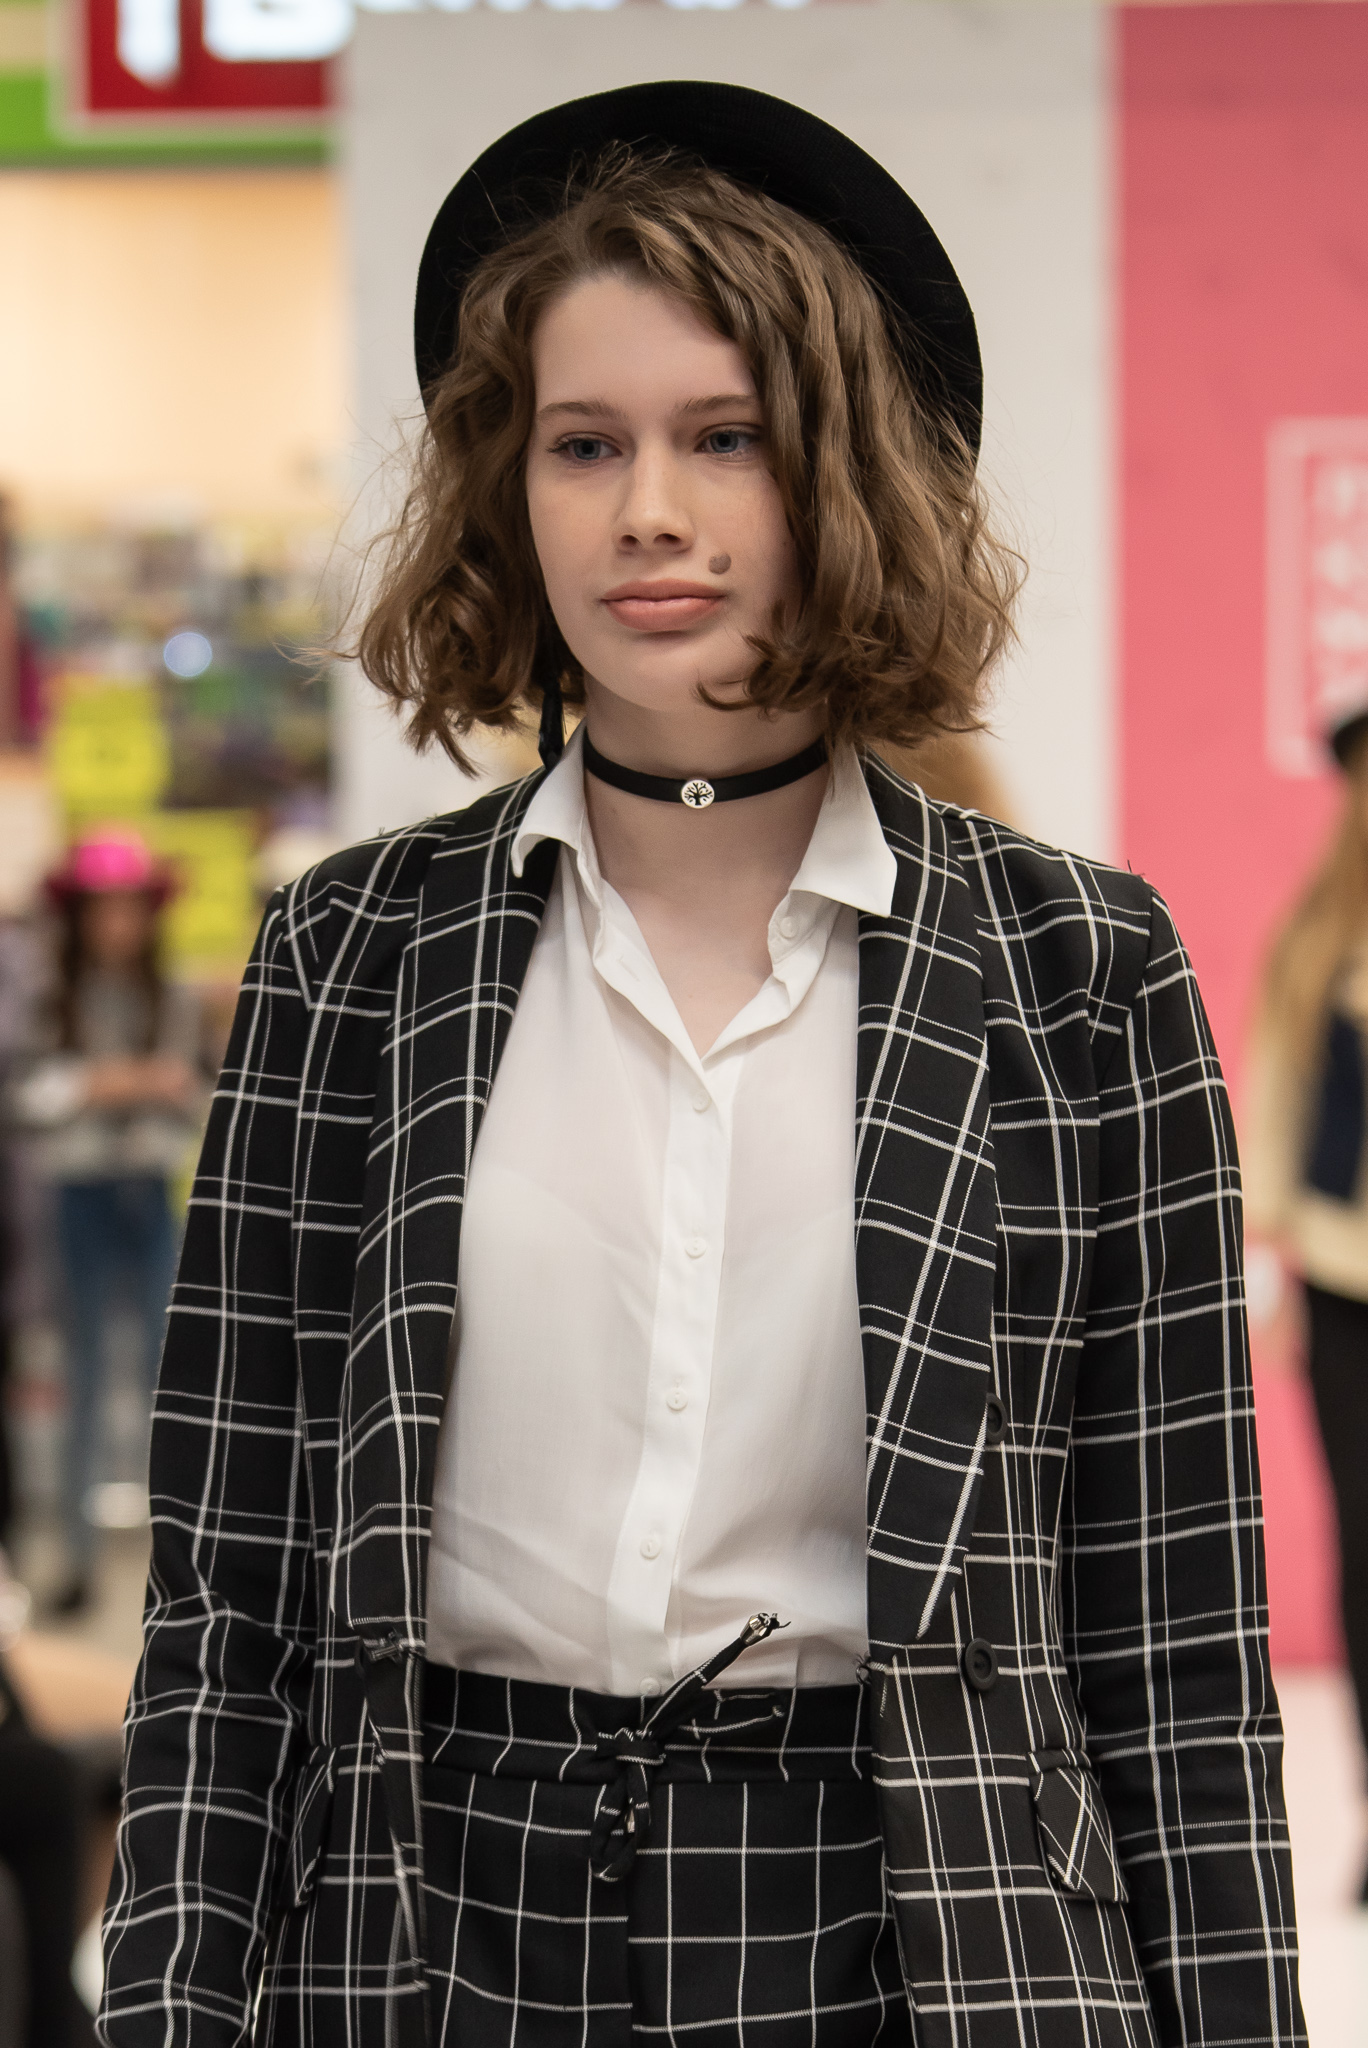 Конкурс «Лучшая юная модель 2019». Фото Mailand.ru